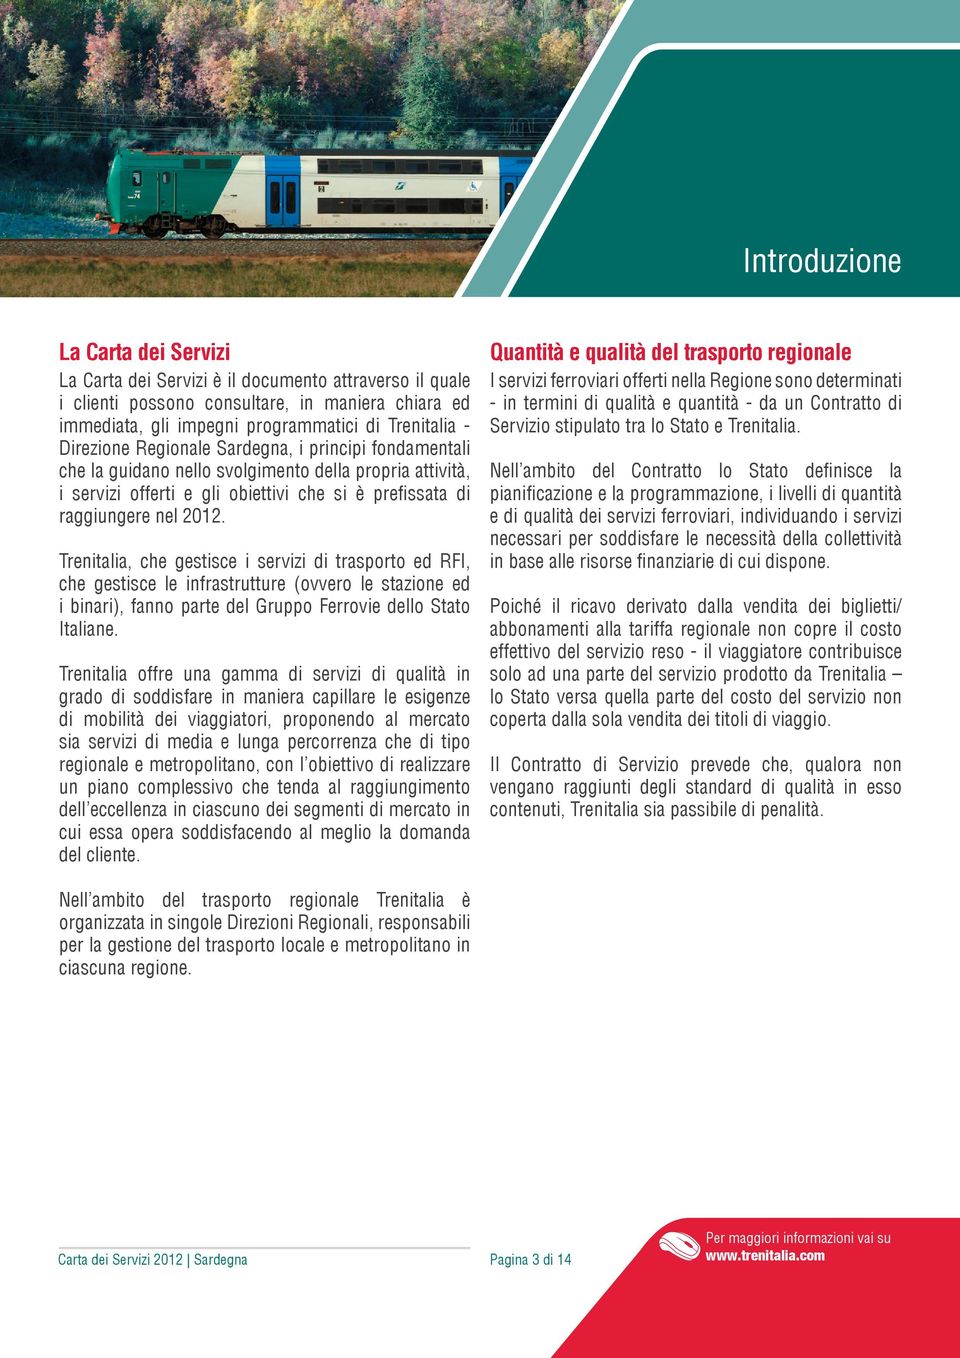 Trenitalia, che gestisce i servizi di trasporto ed RFI, che gestisce le infrastrutture (ovvero le stazione ed i binari), fanno parte del Gruppo Ferrovie dello Stato Italiane.